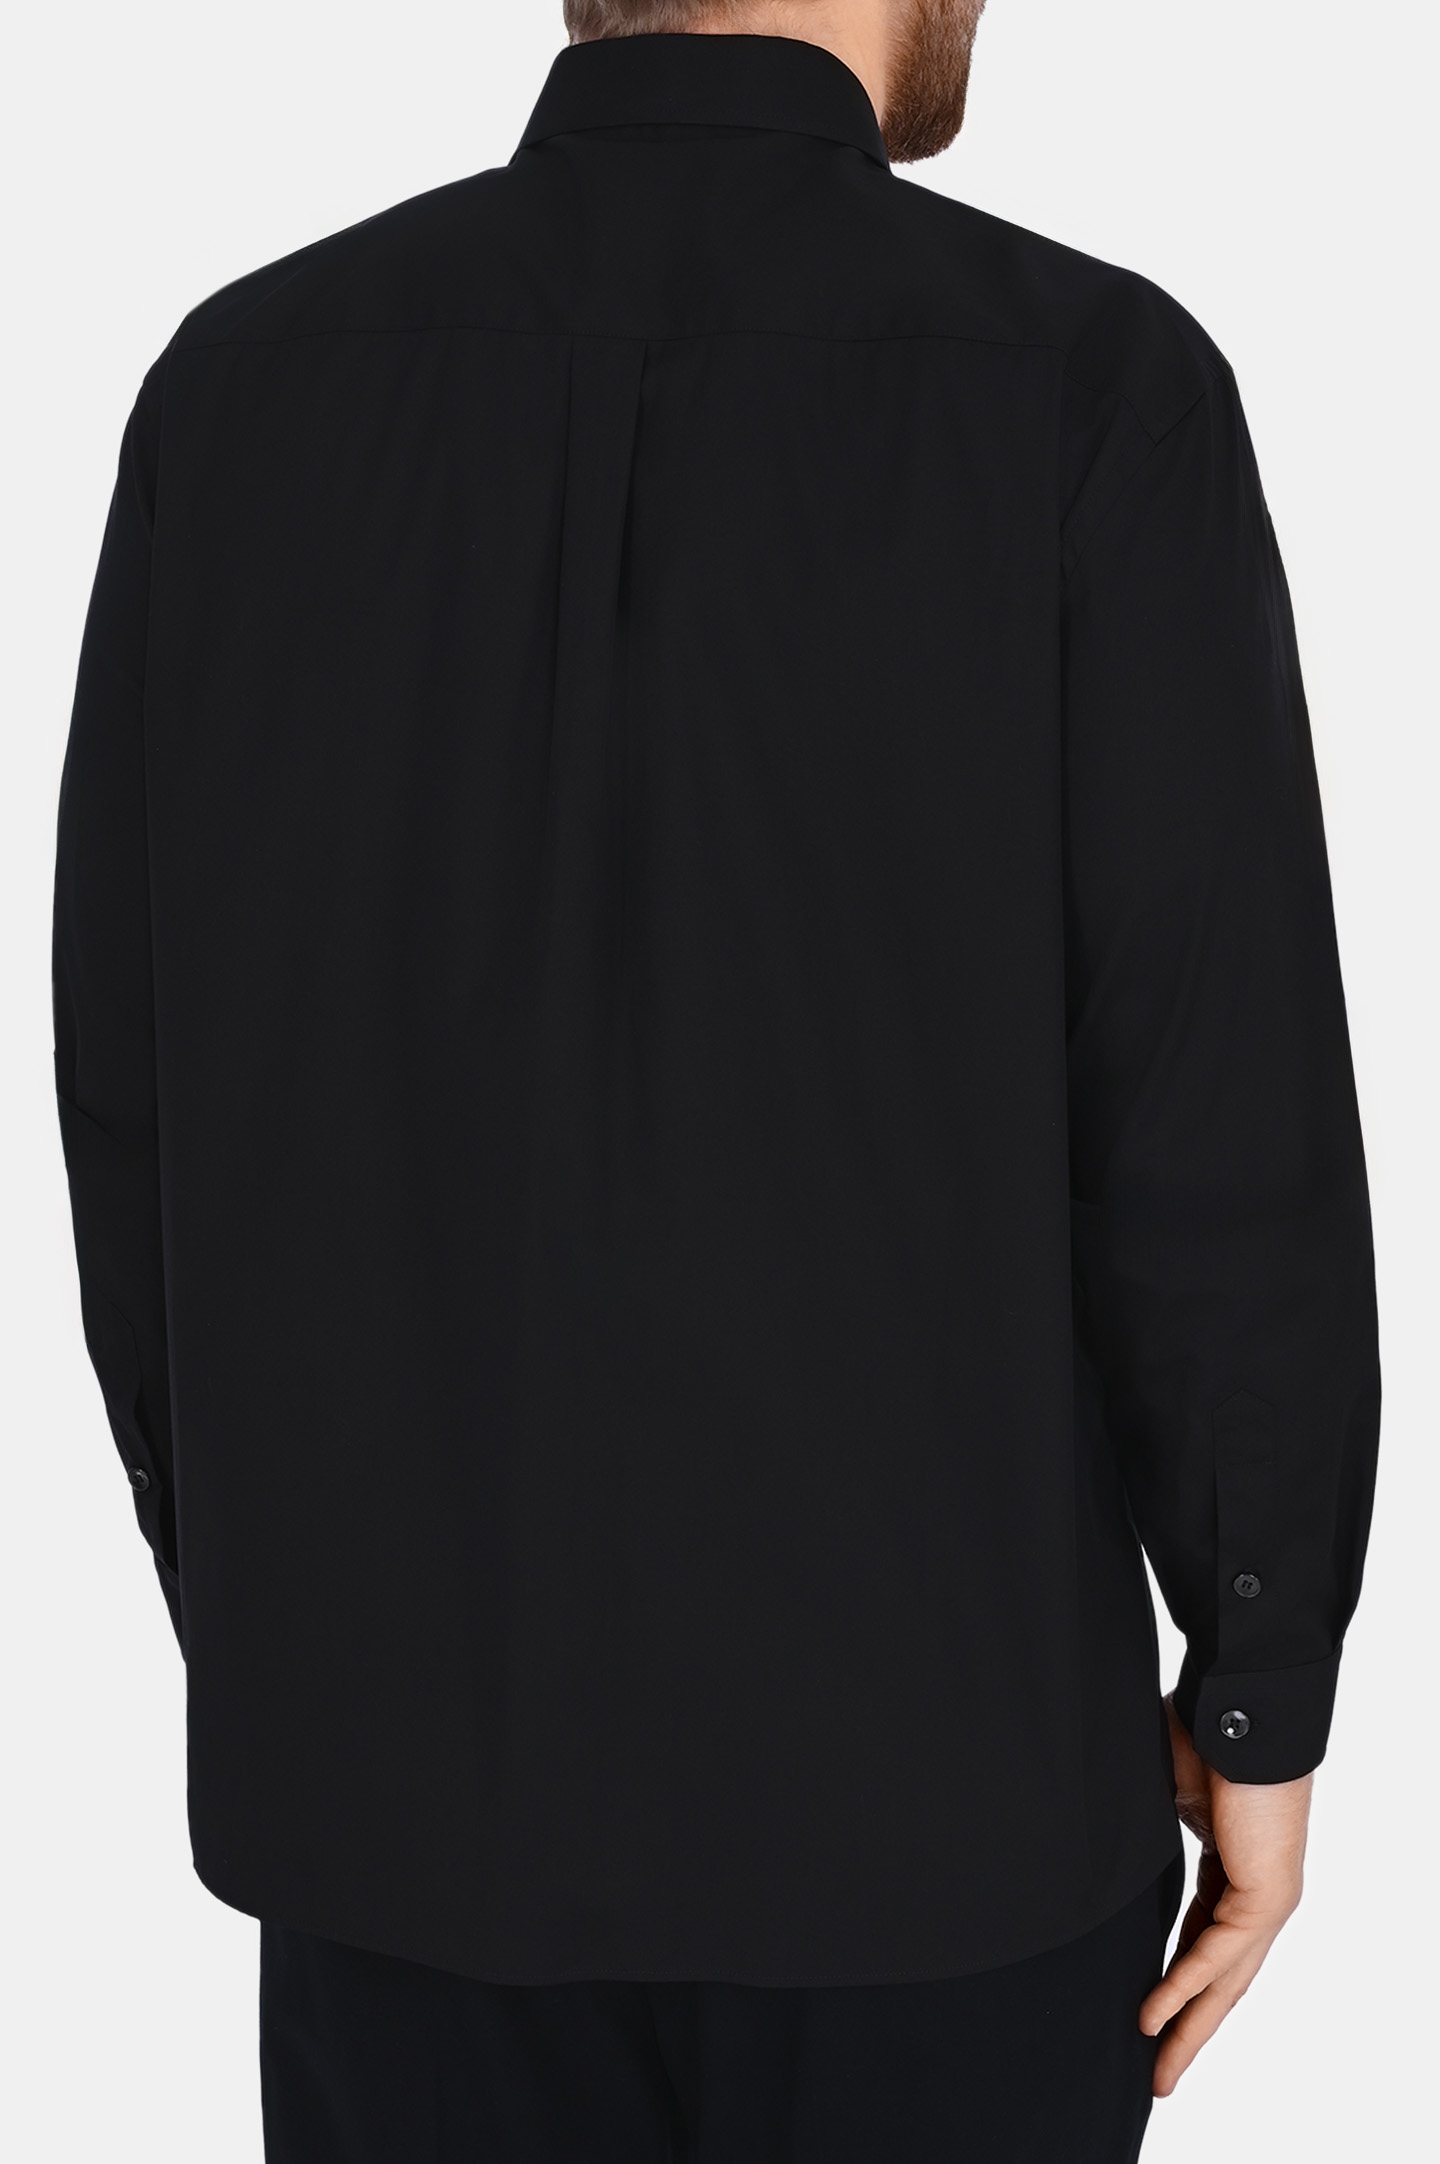 Рубашка DOLCE & GABBANA G5JG4T FU5U8, цвет: Черный, Мужской